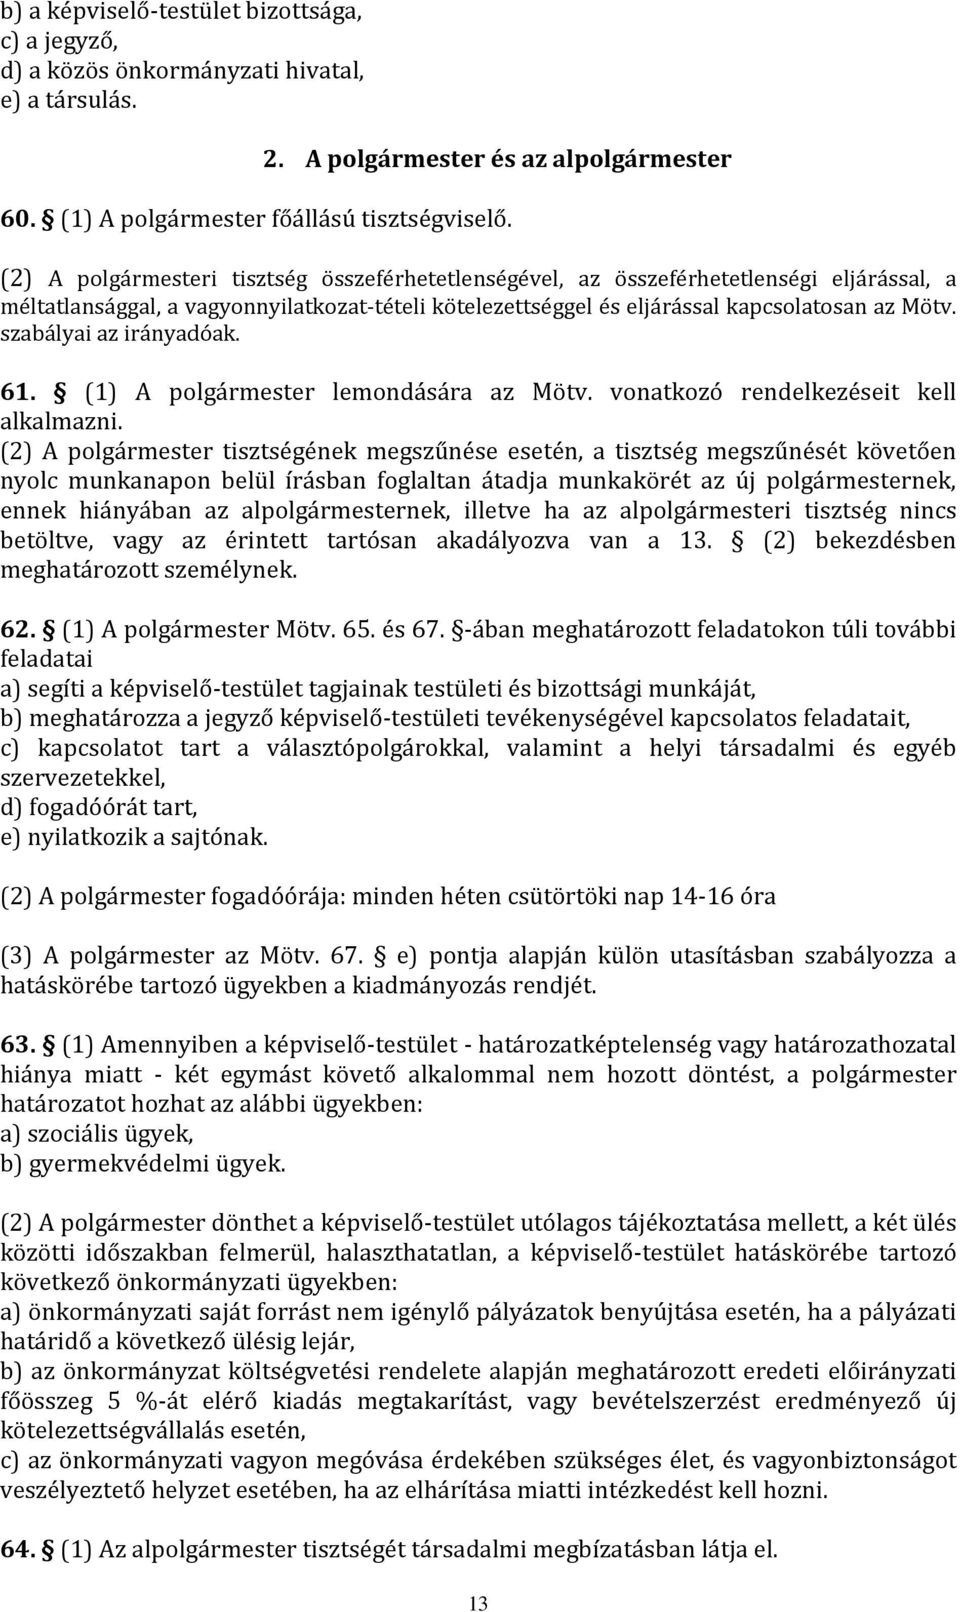 szabályai az irányadóak. 61. (1) A polgármester lemondására az Mötv. vonatkozó rendelkezéseit kell alkalmazni.